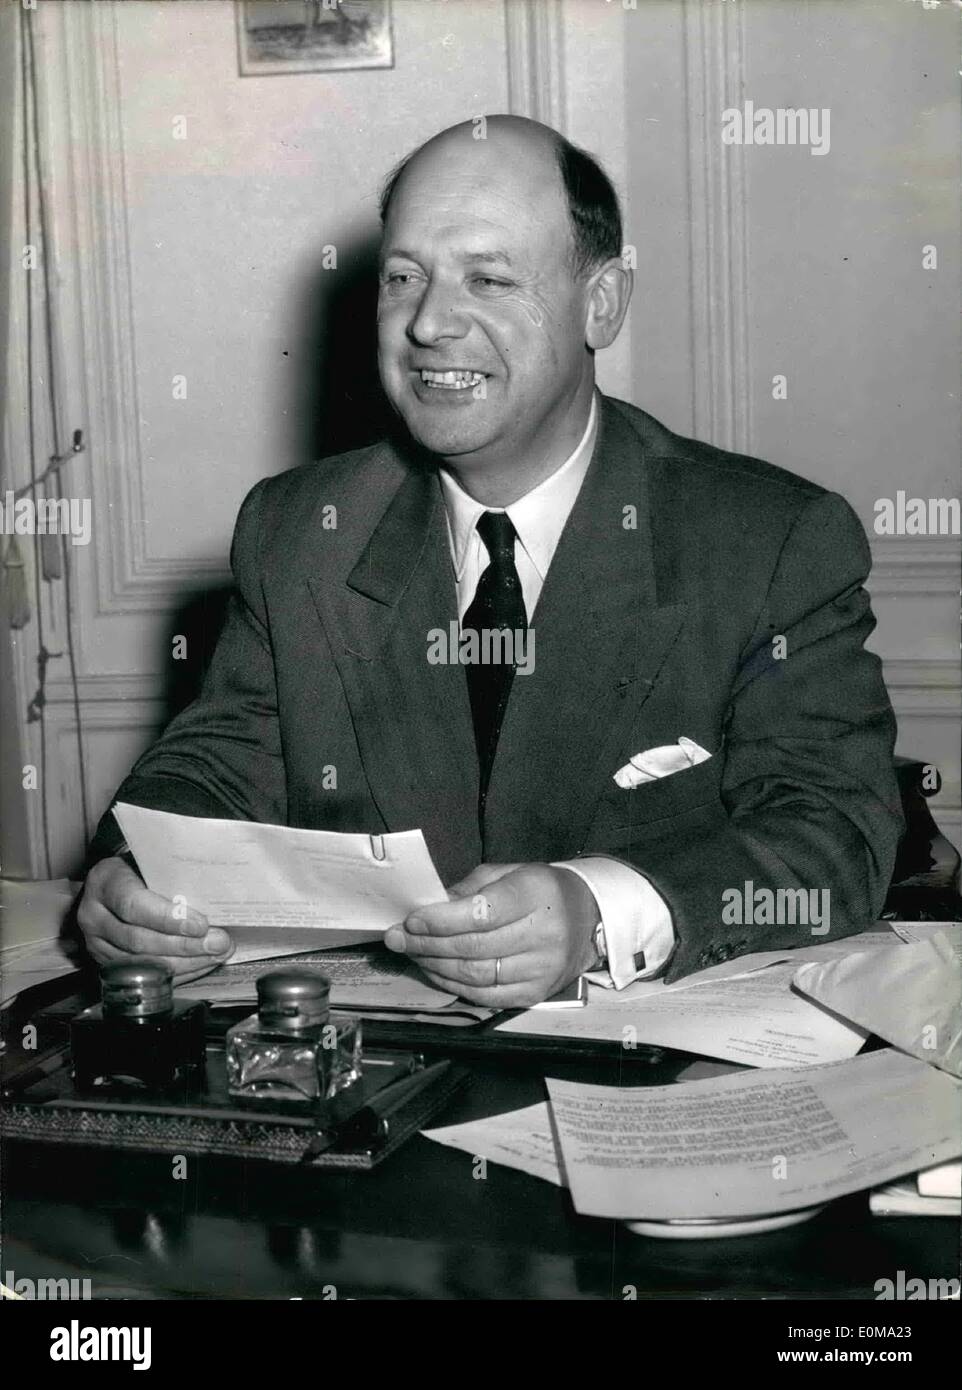 Mai 05, 1954 - NOUVEAU PRÉSIDENT GÉNÉRAL DE L'ANGLAIS AU MAROC. M. FRANCIS LACOSTE LE NOUVEAU PRÉSIDENT FRANÇAIS GÉNÉRAL AU MAROC PHOTOGRAPHIÉ DANS SON BUREAU DE L'OFFICE DU MARUC, Paris, cet après-midi. Banque D'Images